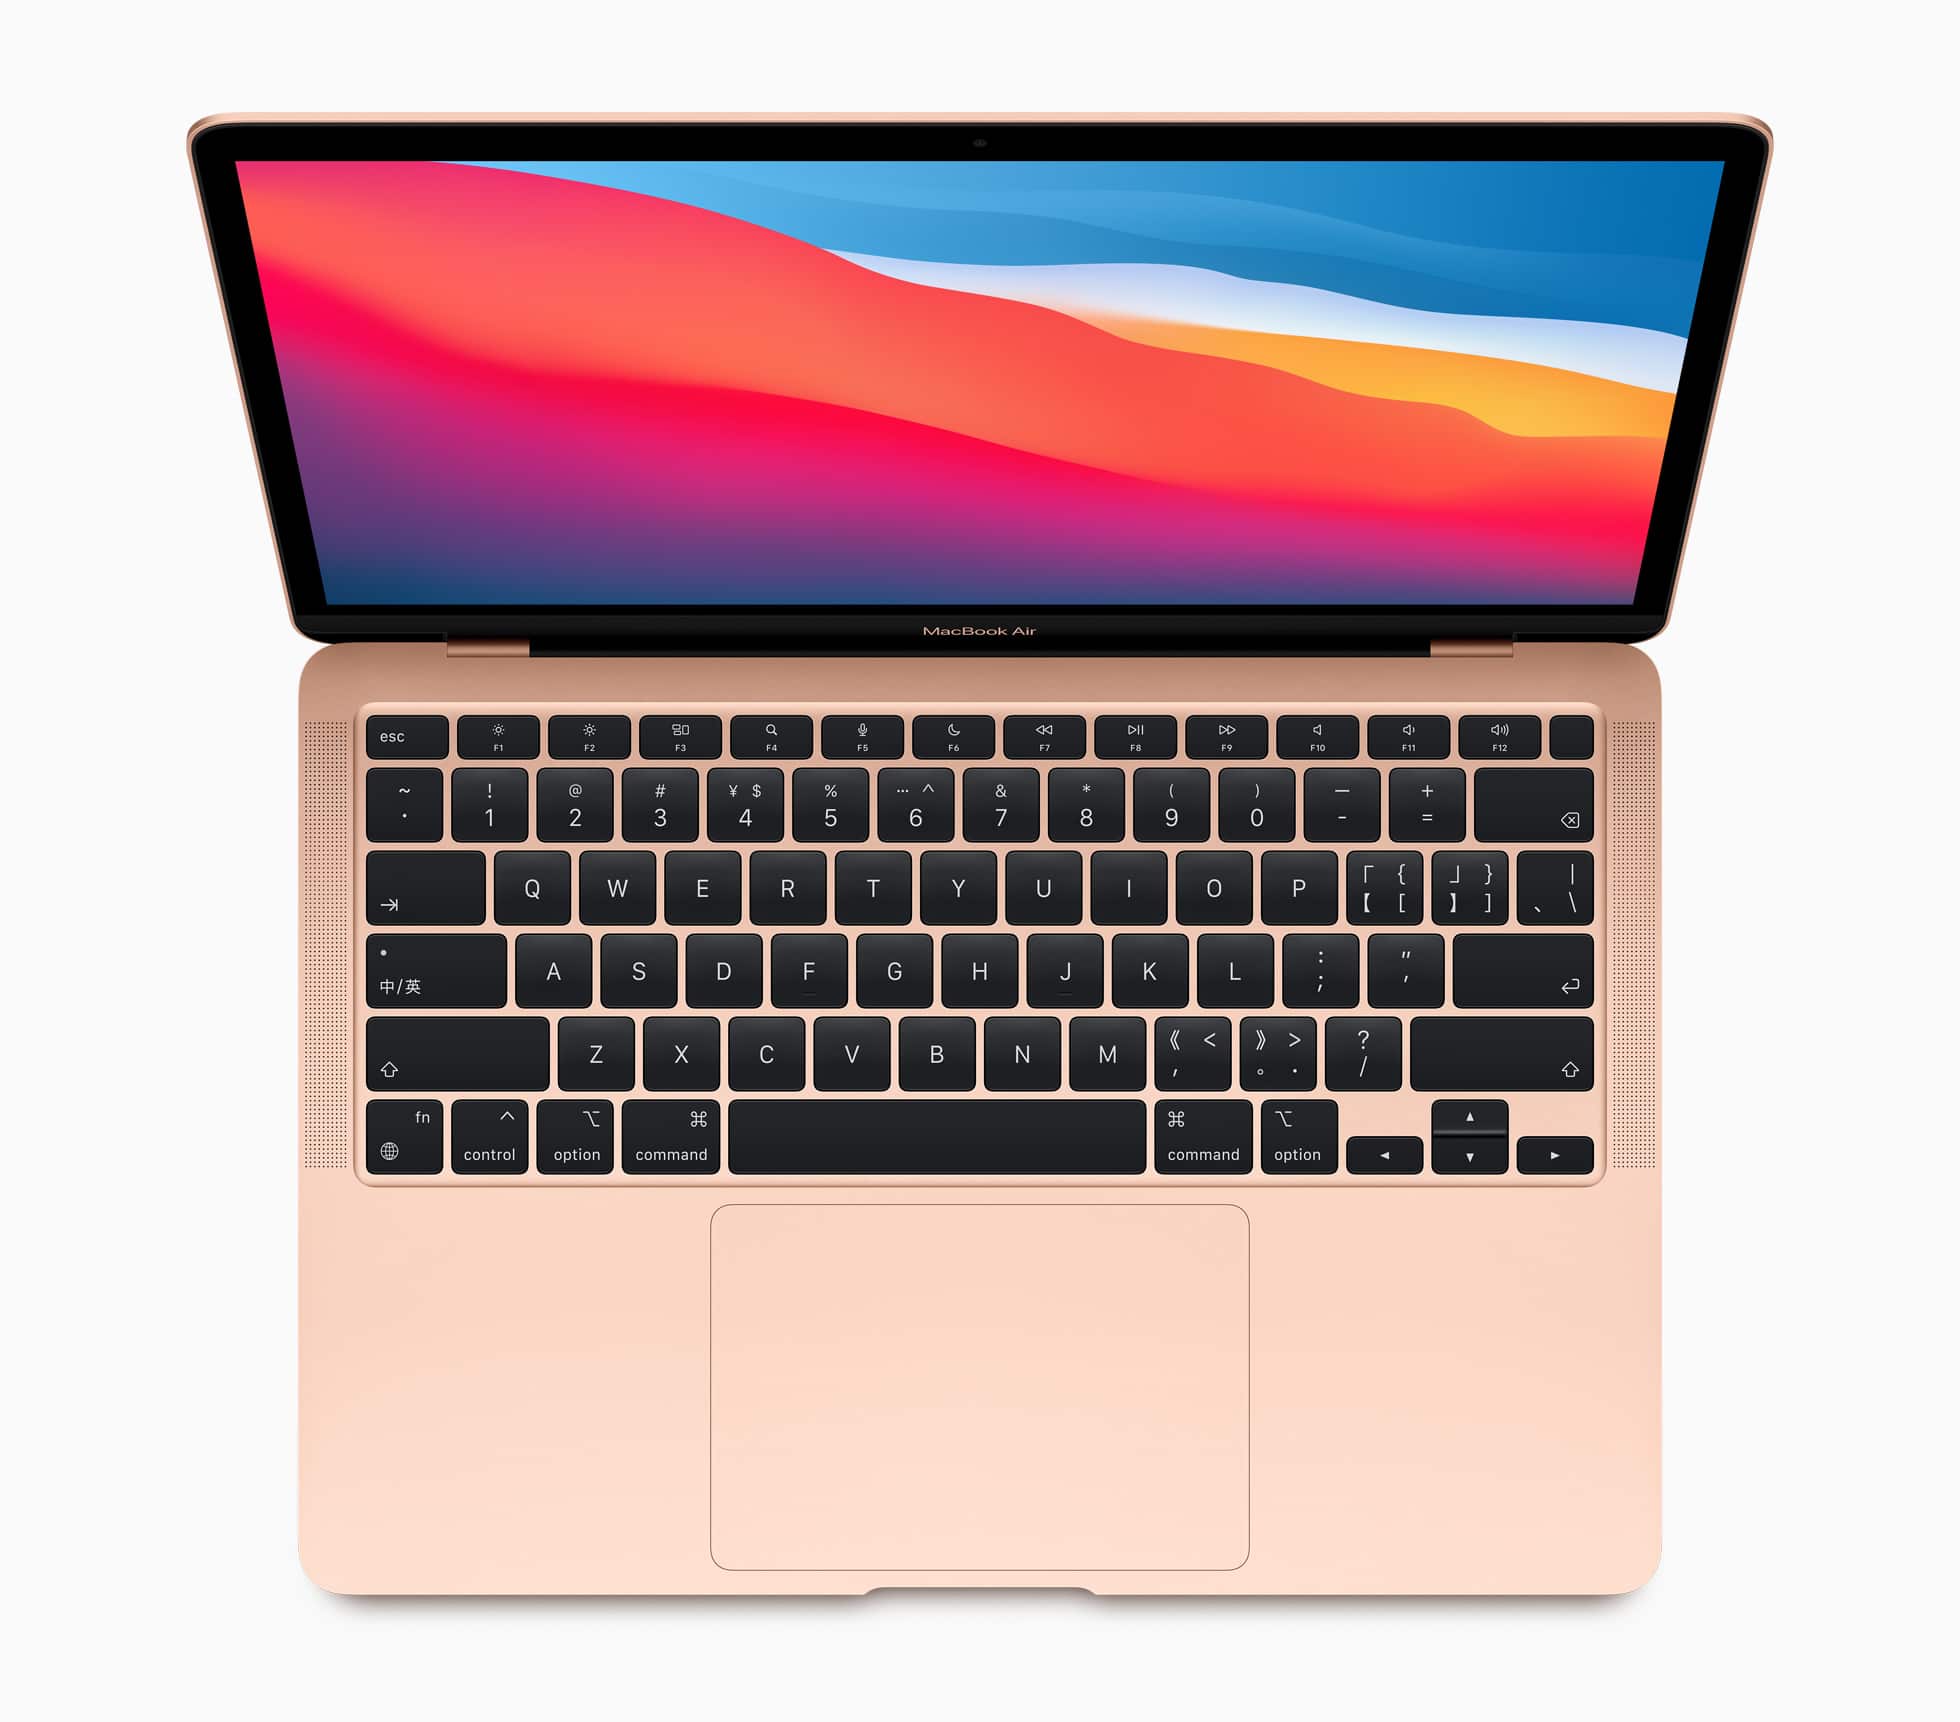 Novo MacBook Air com chip Apple M1 na cor dourada visto de cima